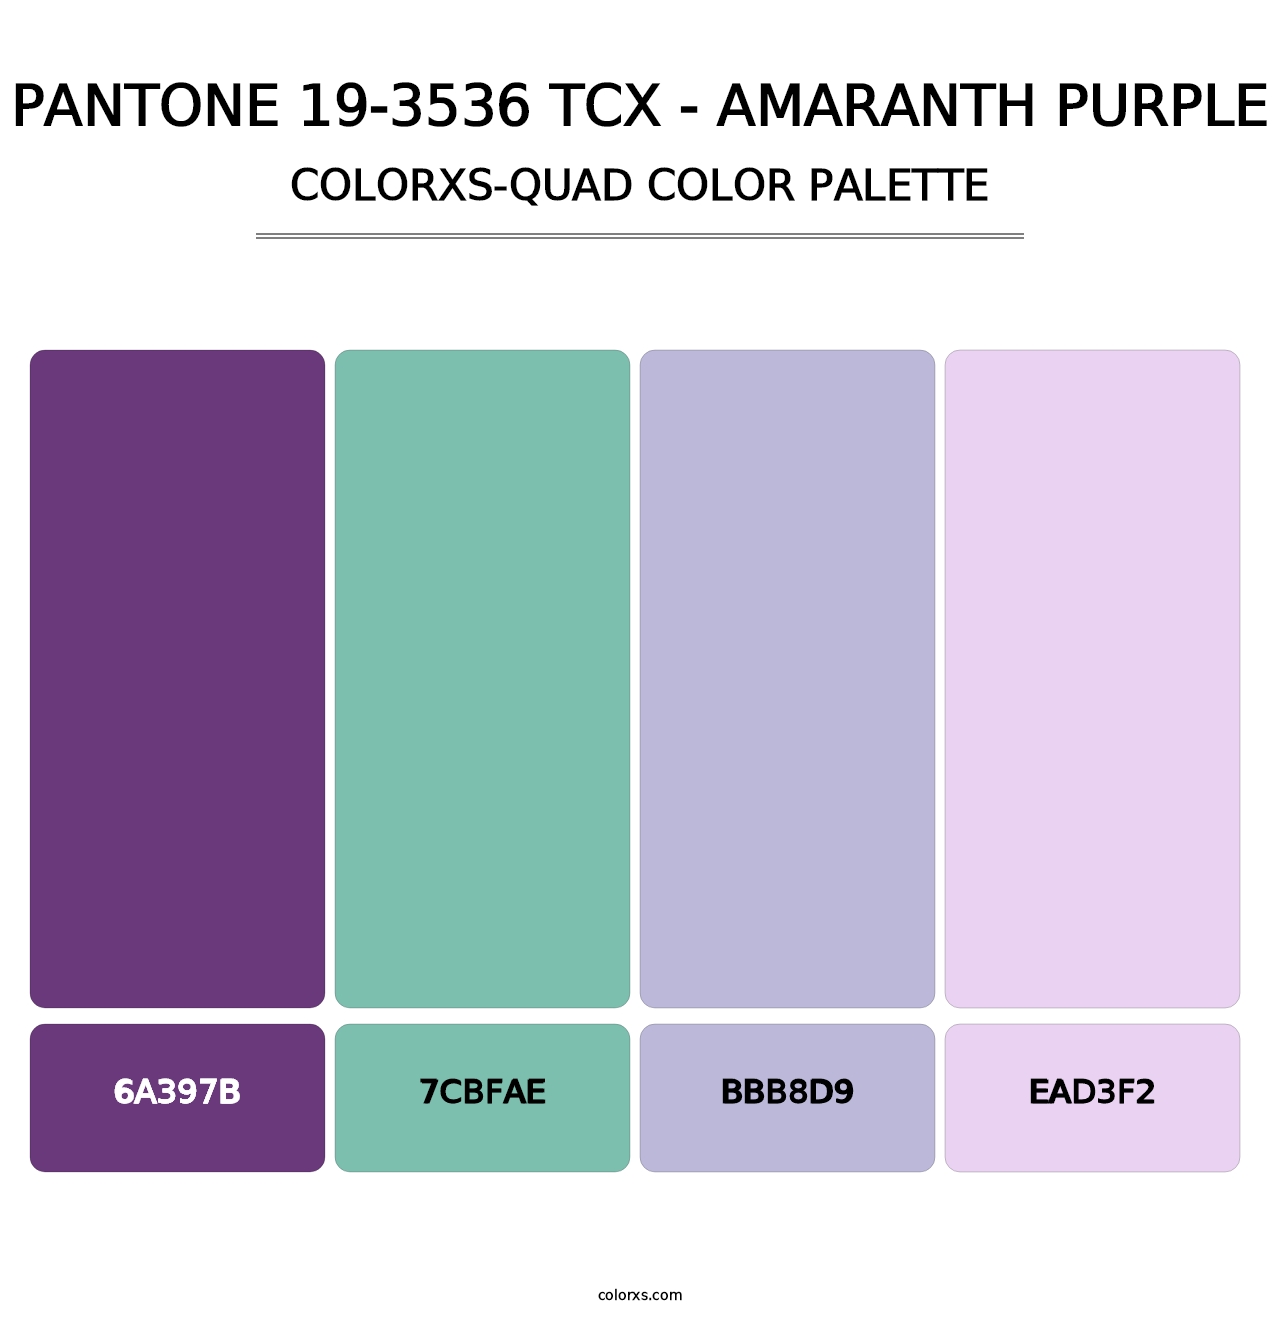 PANTONE 19-3536 TCX - Amaranth Purple - Colorxs Quad Palette